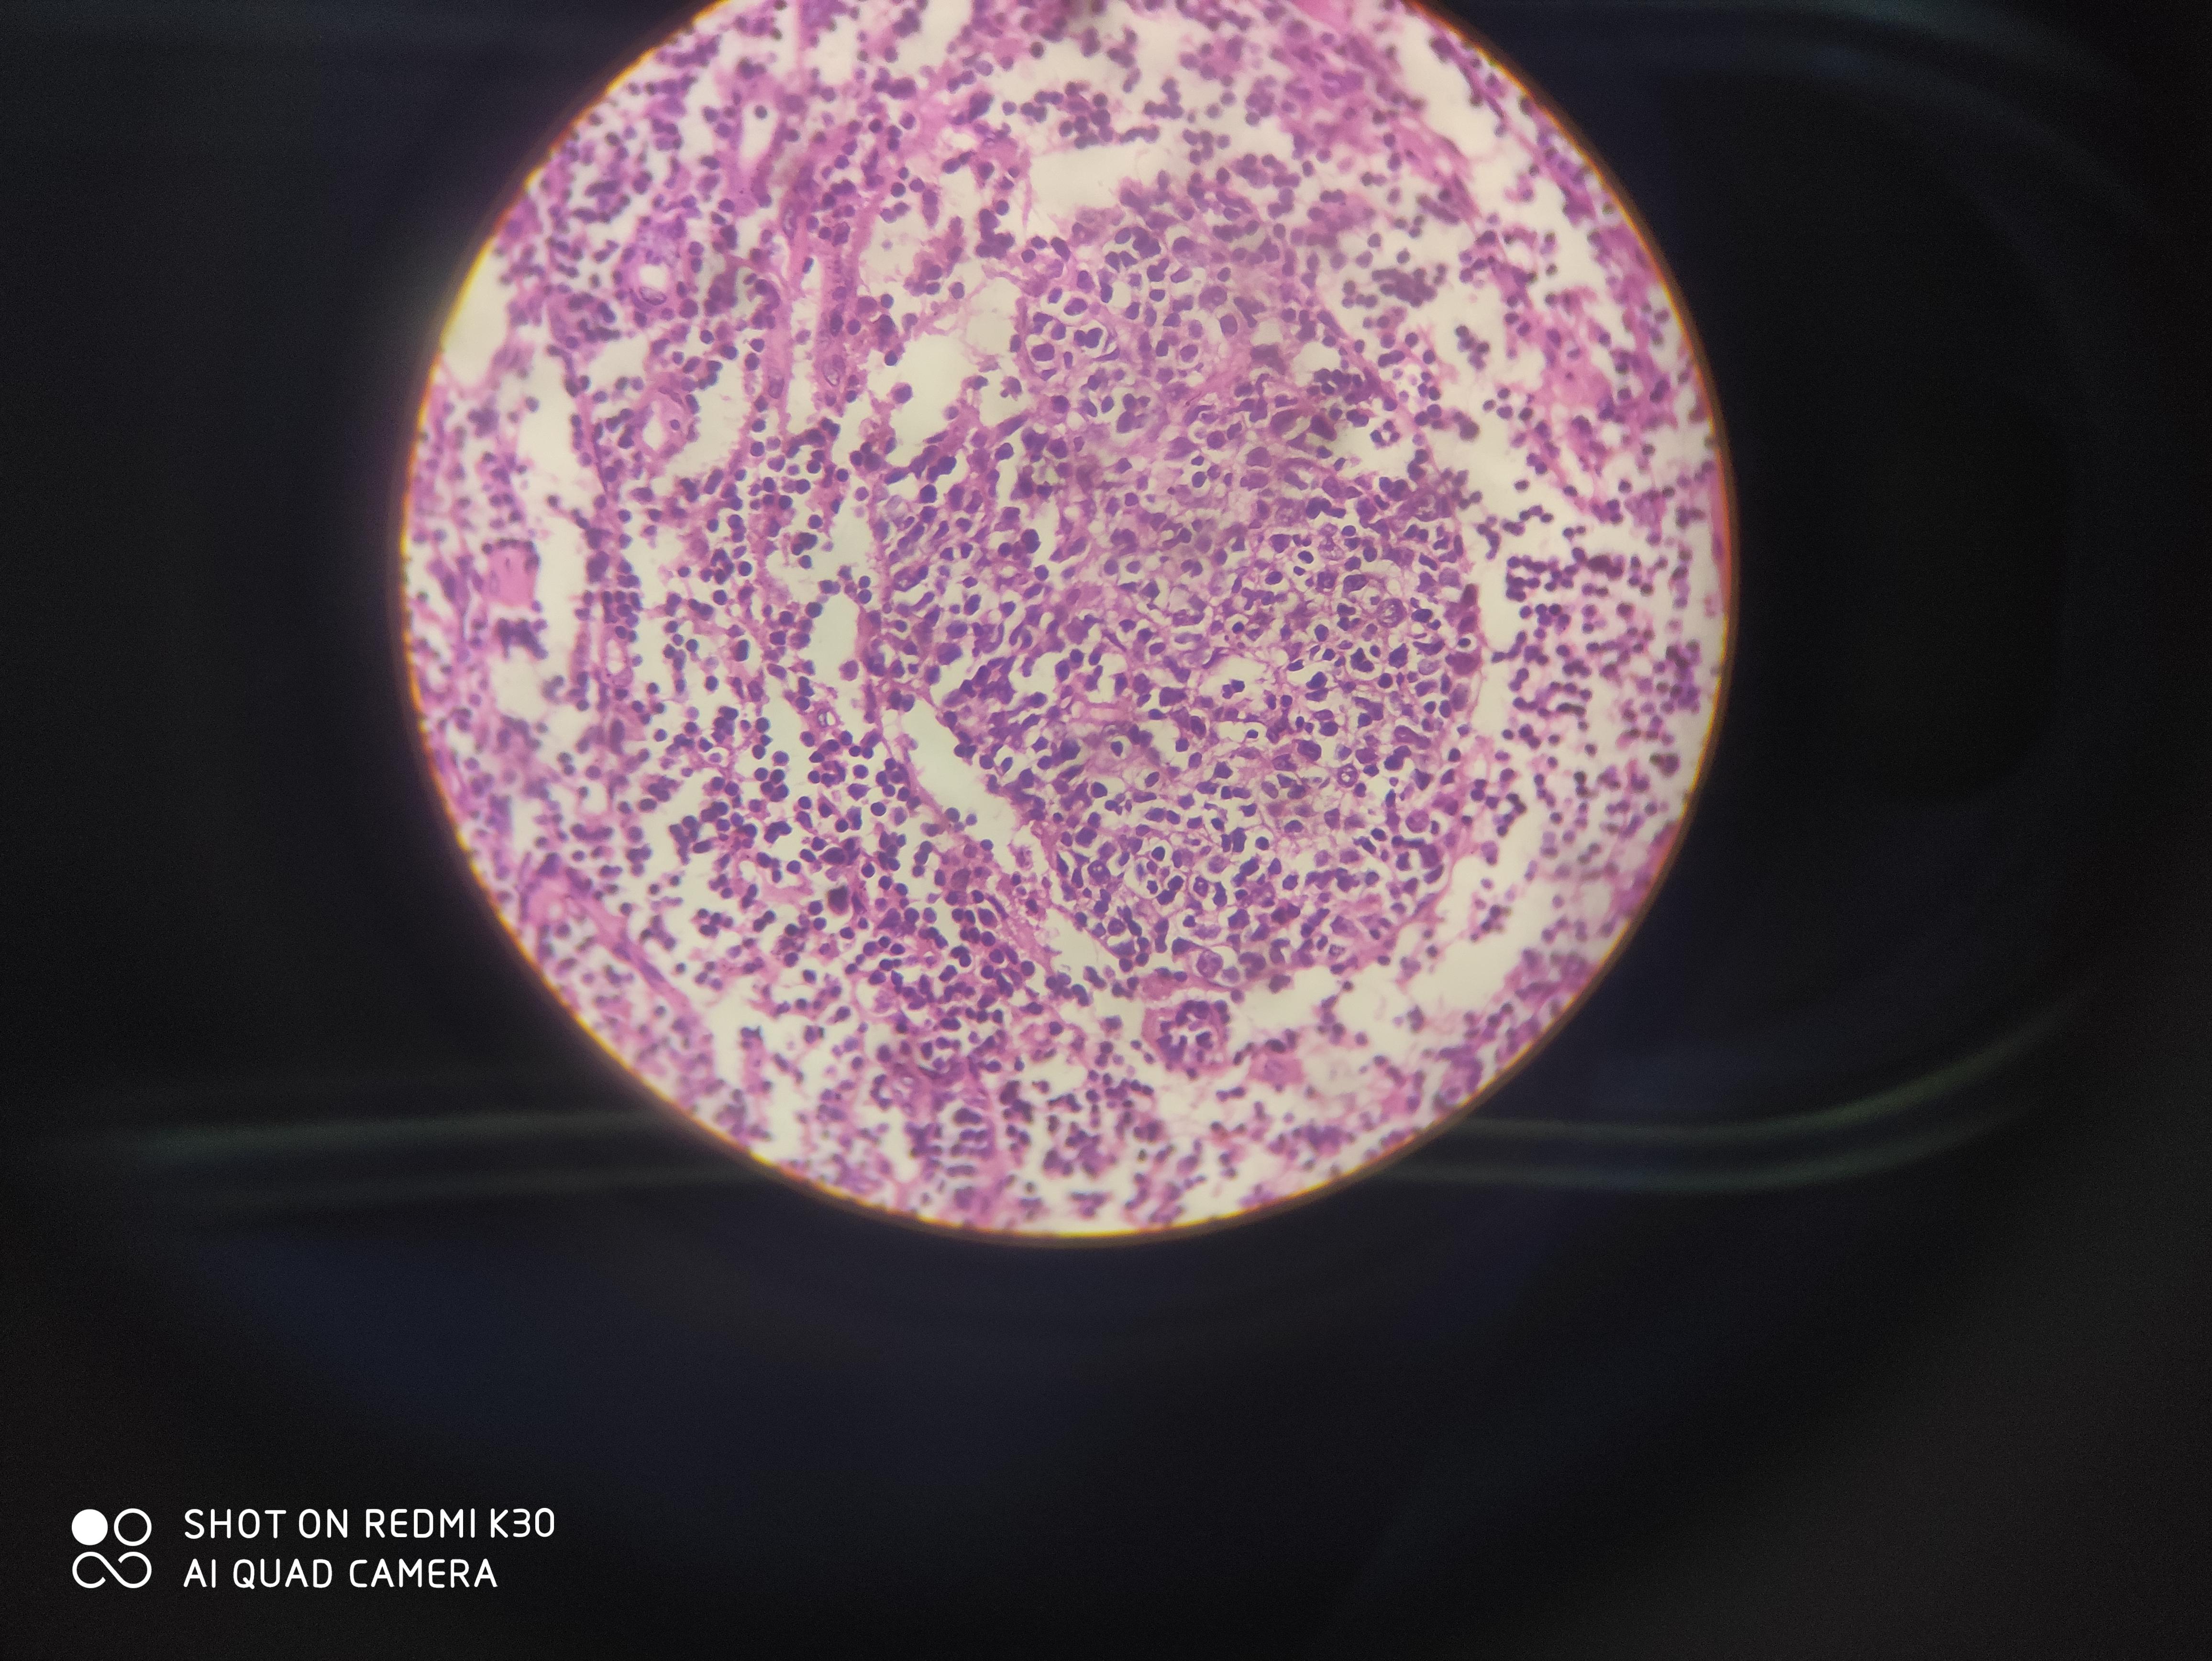 类上皮细胞也不是空泡状的蜂窝织炎性阑尾炎注意胞浆与胞核的形状与